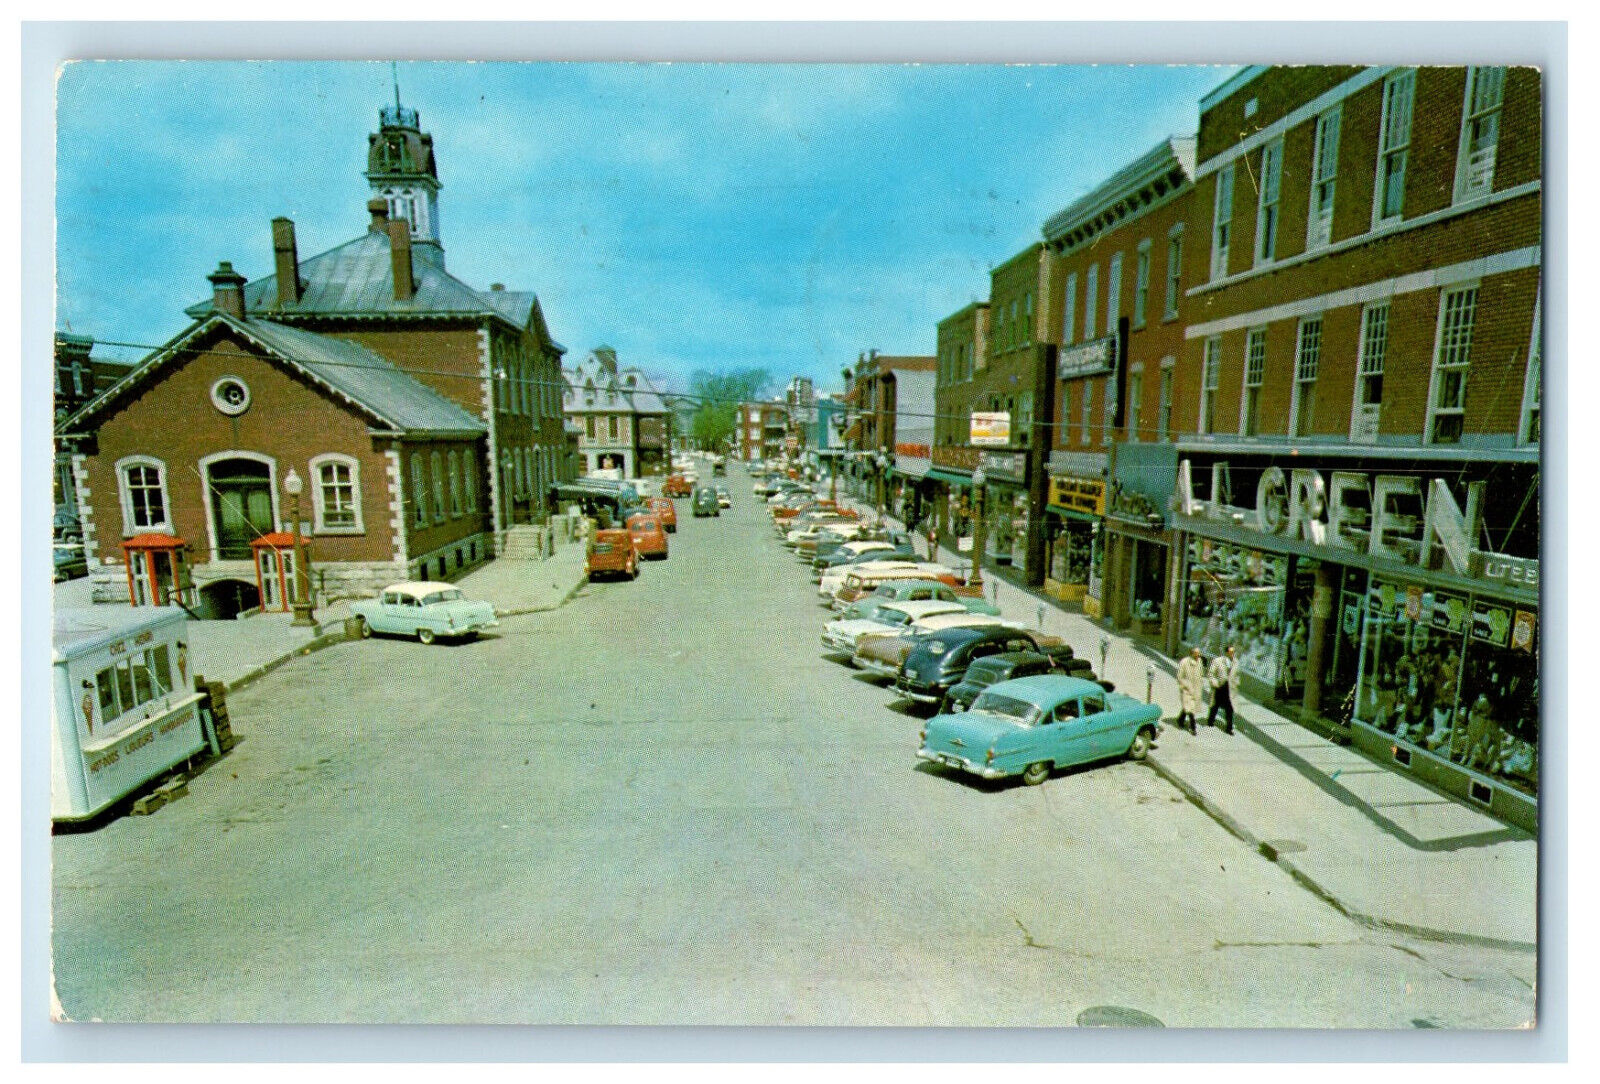 1961 Al Green Market Place, Commercial Centre, Joliette Quebec Canada Postcard